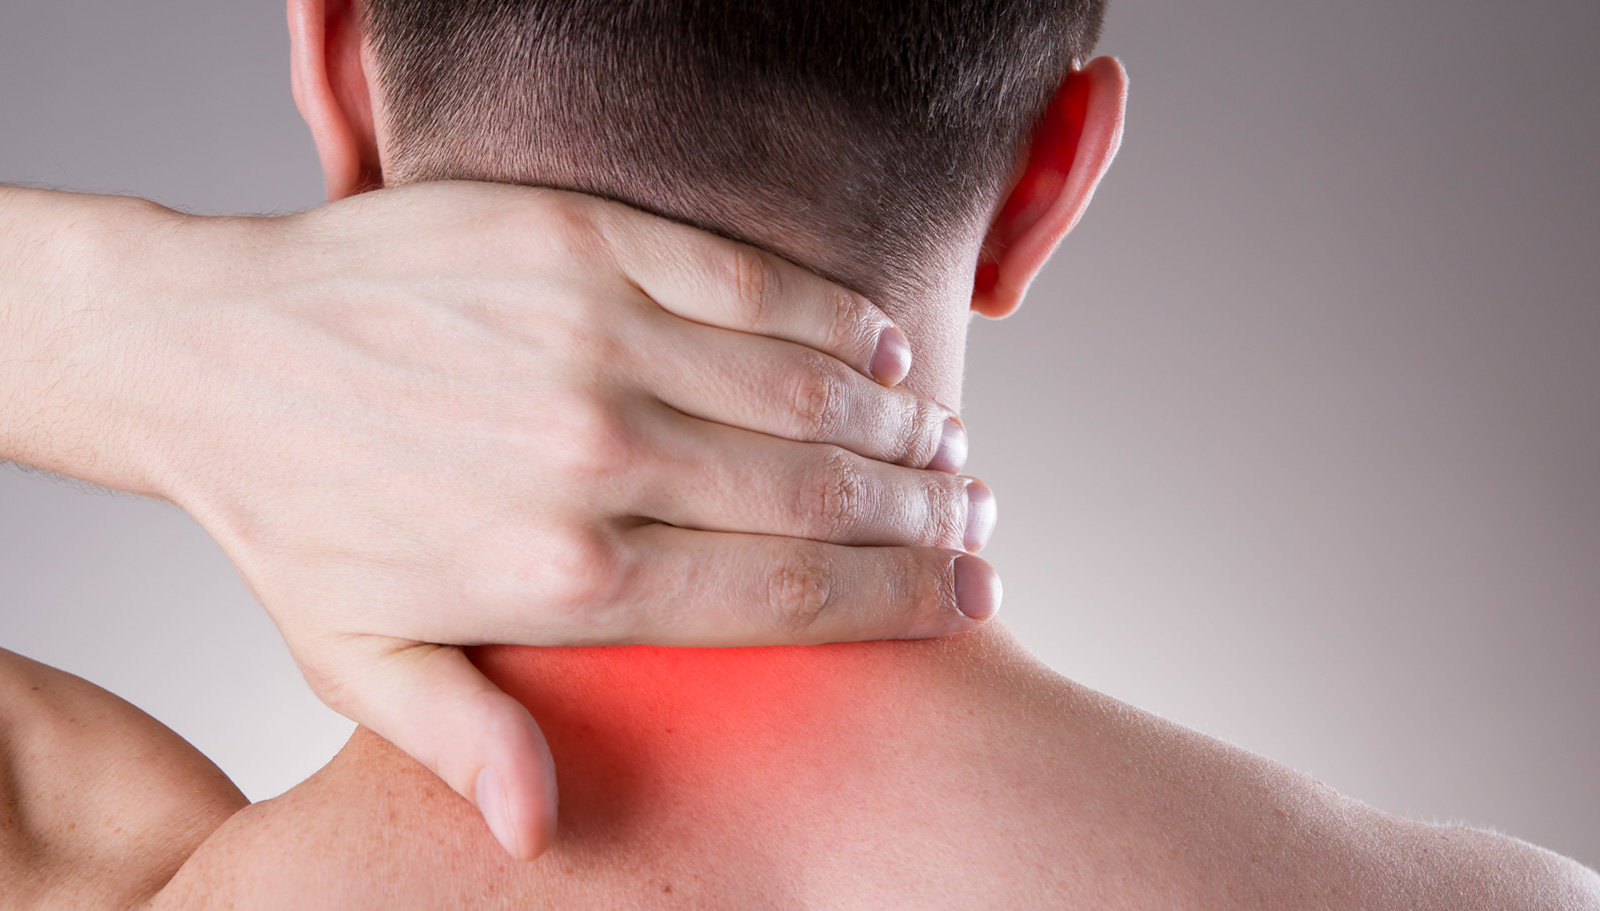 dureri severe de gât și spate durere acută la nivelul coloanei vertebrale toracice